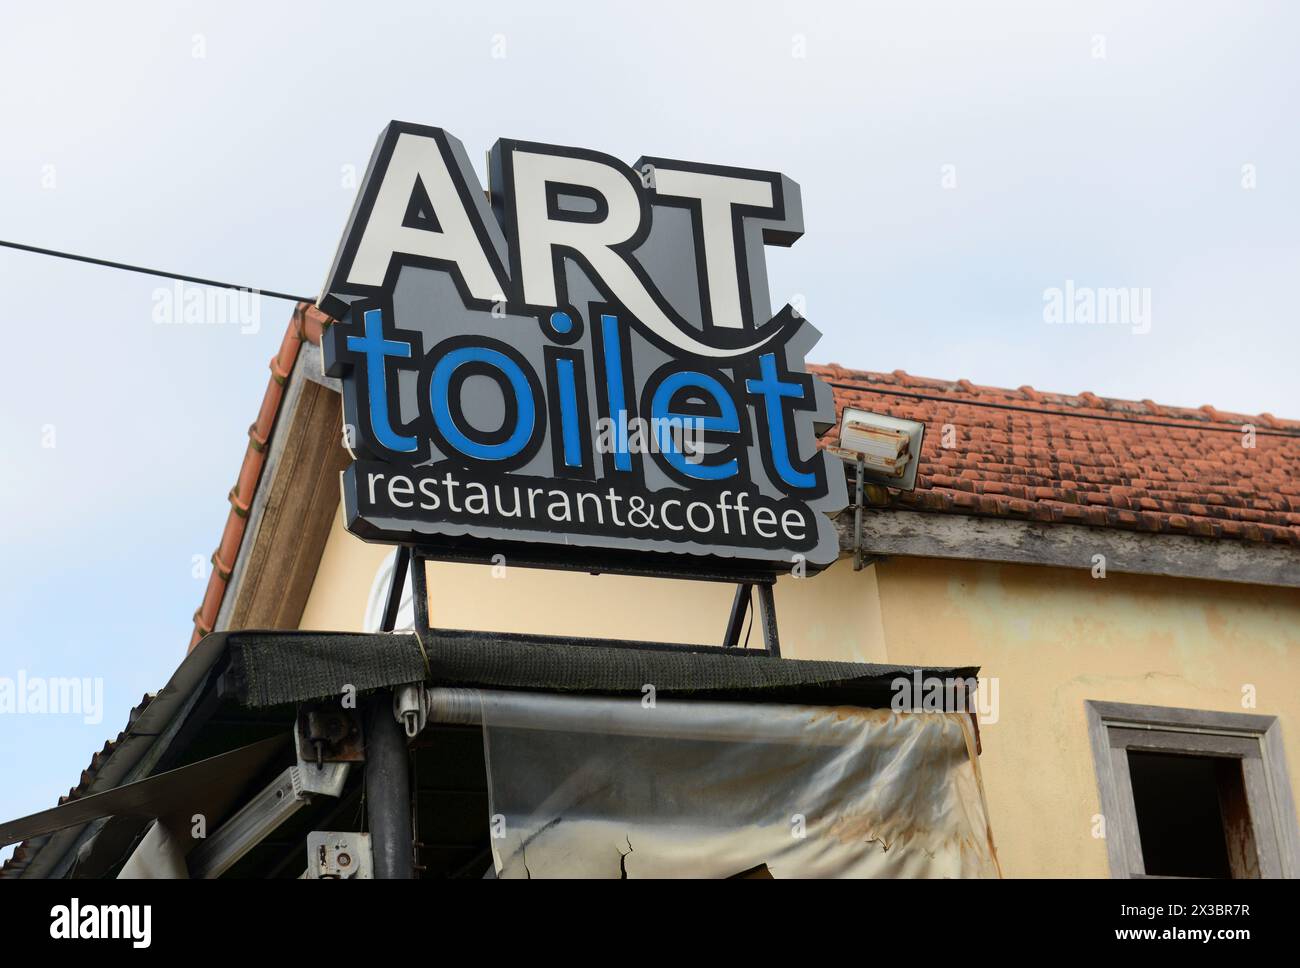 Art Toilet restaurant, An hoi, Hoi An, Vietnam. Stock Photo